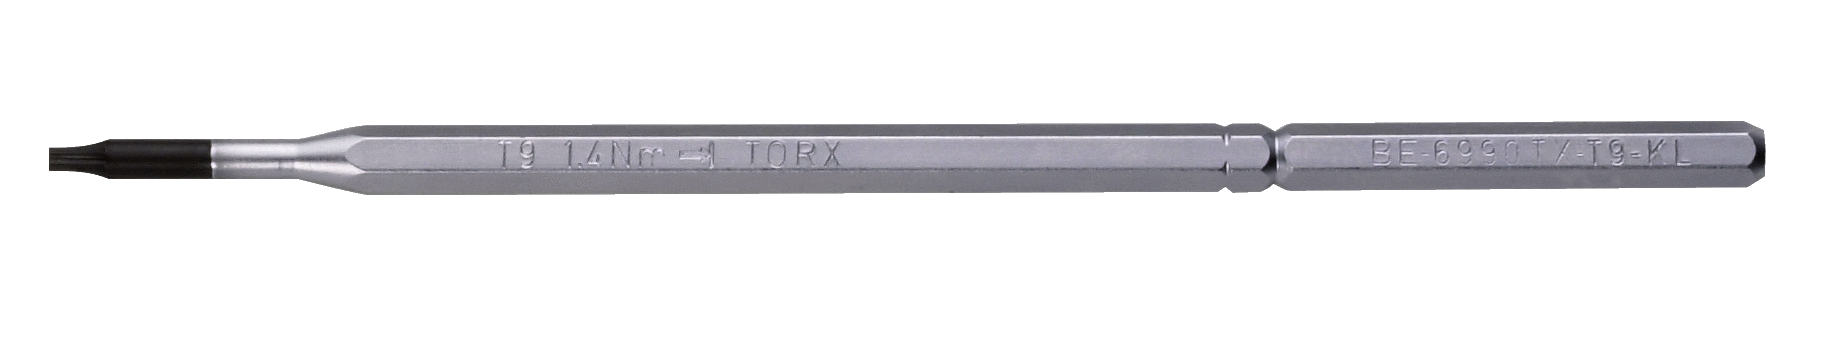 Запасной стержень для винтов с головкой TORX®  BE-6990TX-T20KL